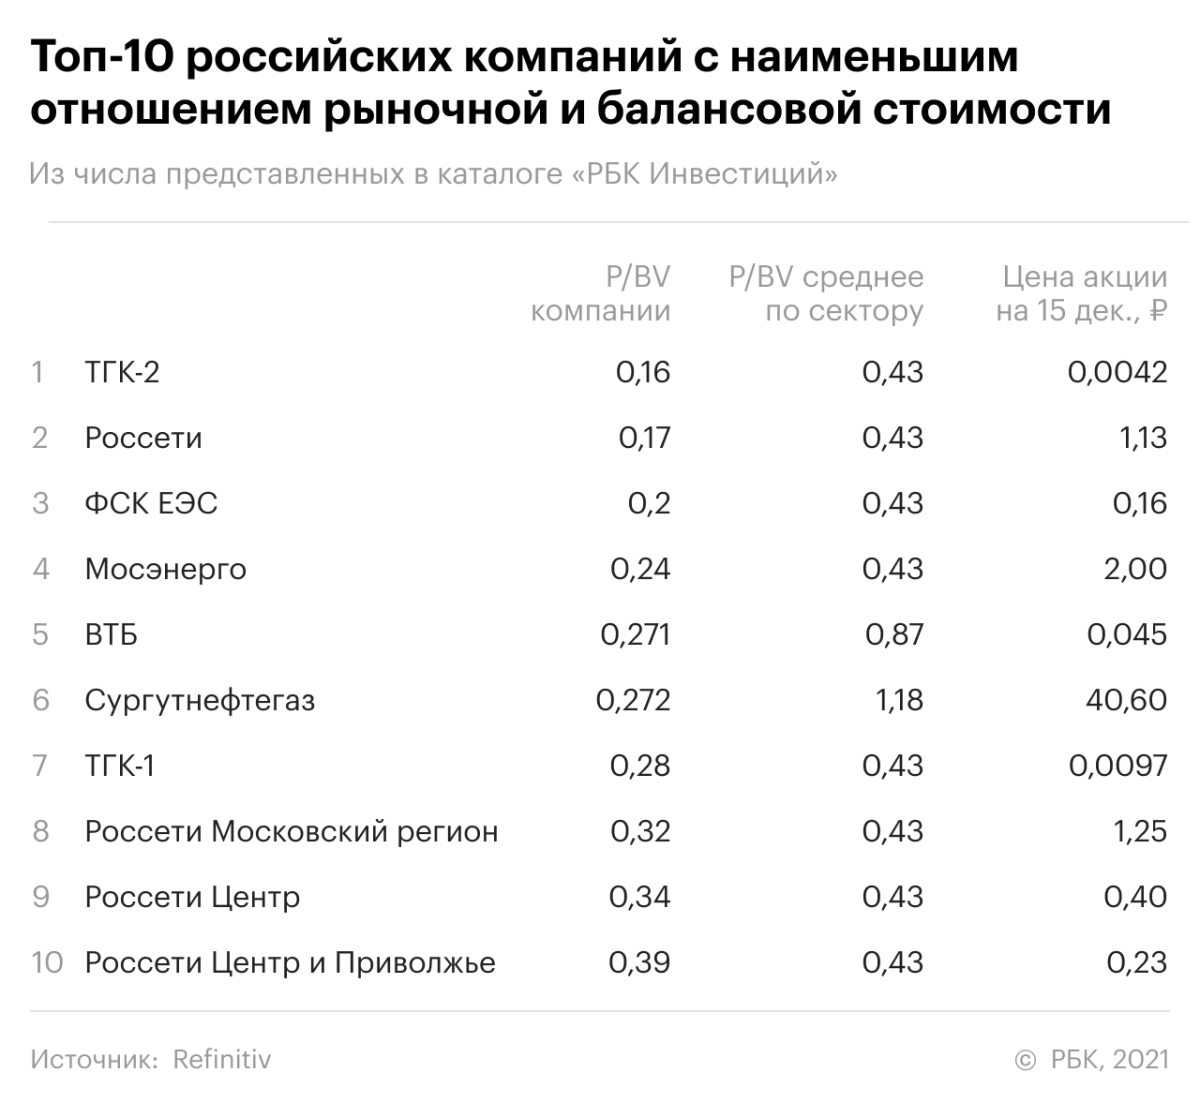 Топ-10 российских компаний с наименьшим P/BV